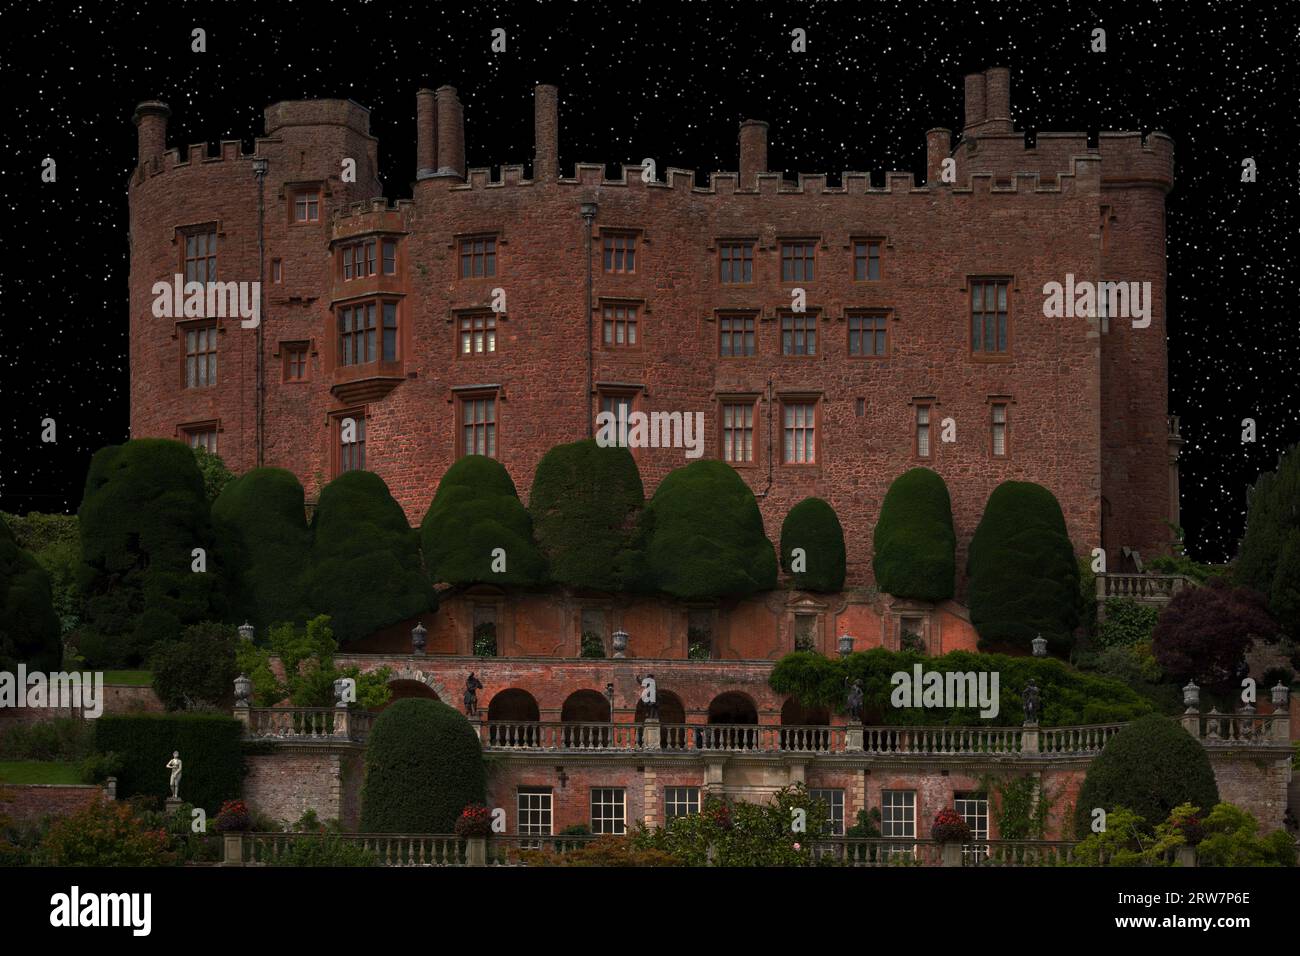 Un'immagine fantastica del castello di Powis in Galles. È stata trasformata in un'immagine spettrale di notte inondata di luce lunare. Fu costruito nel XIII secolo. Foto Stock